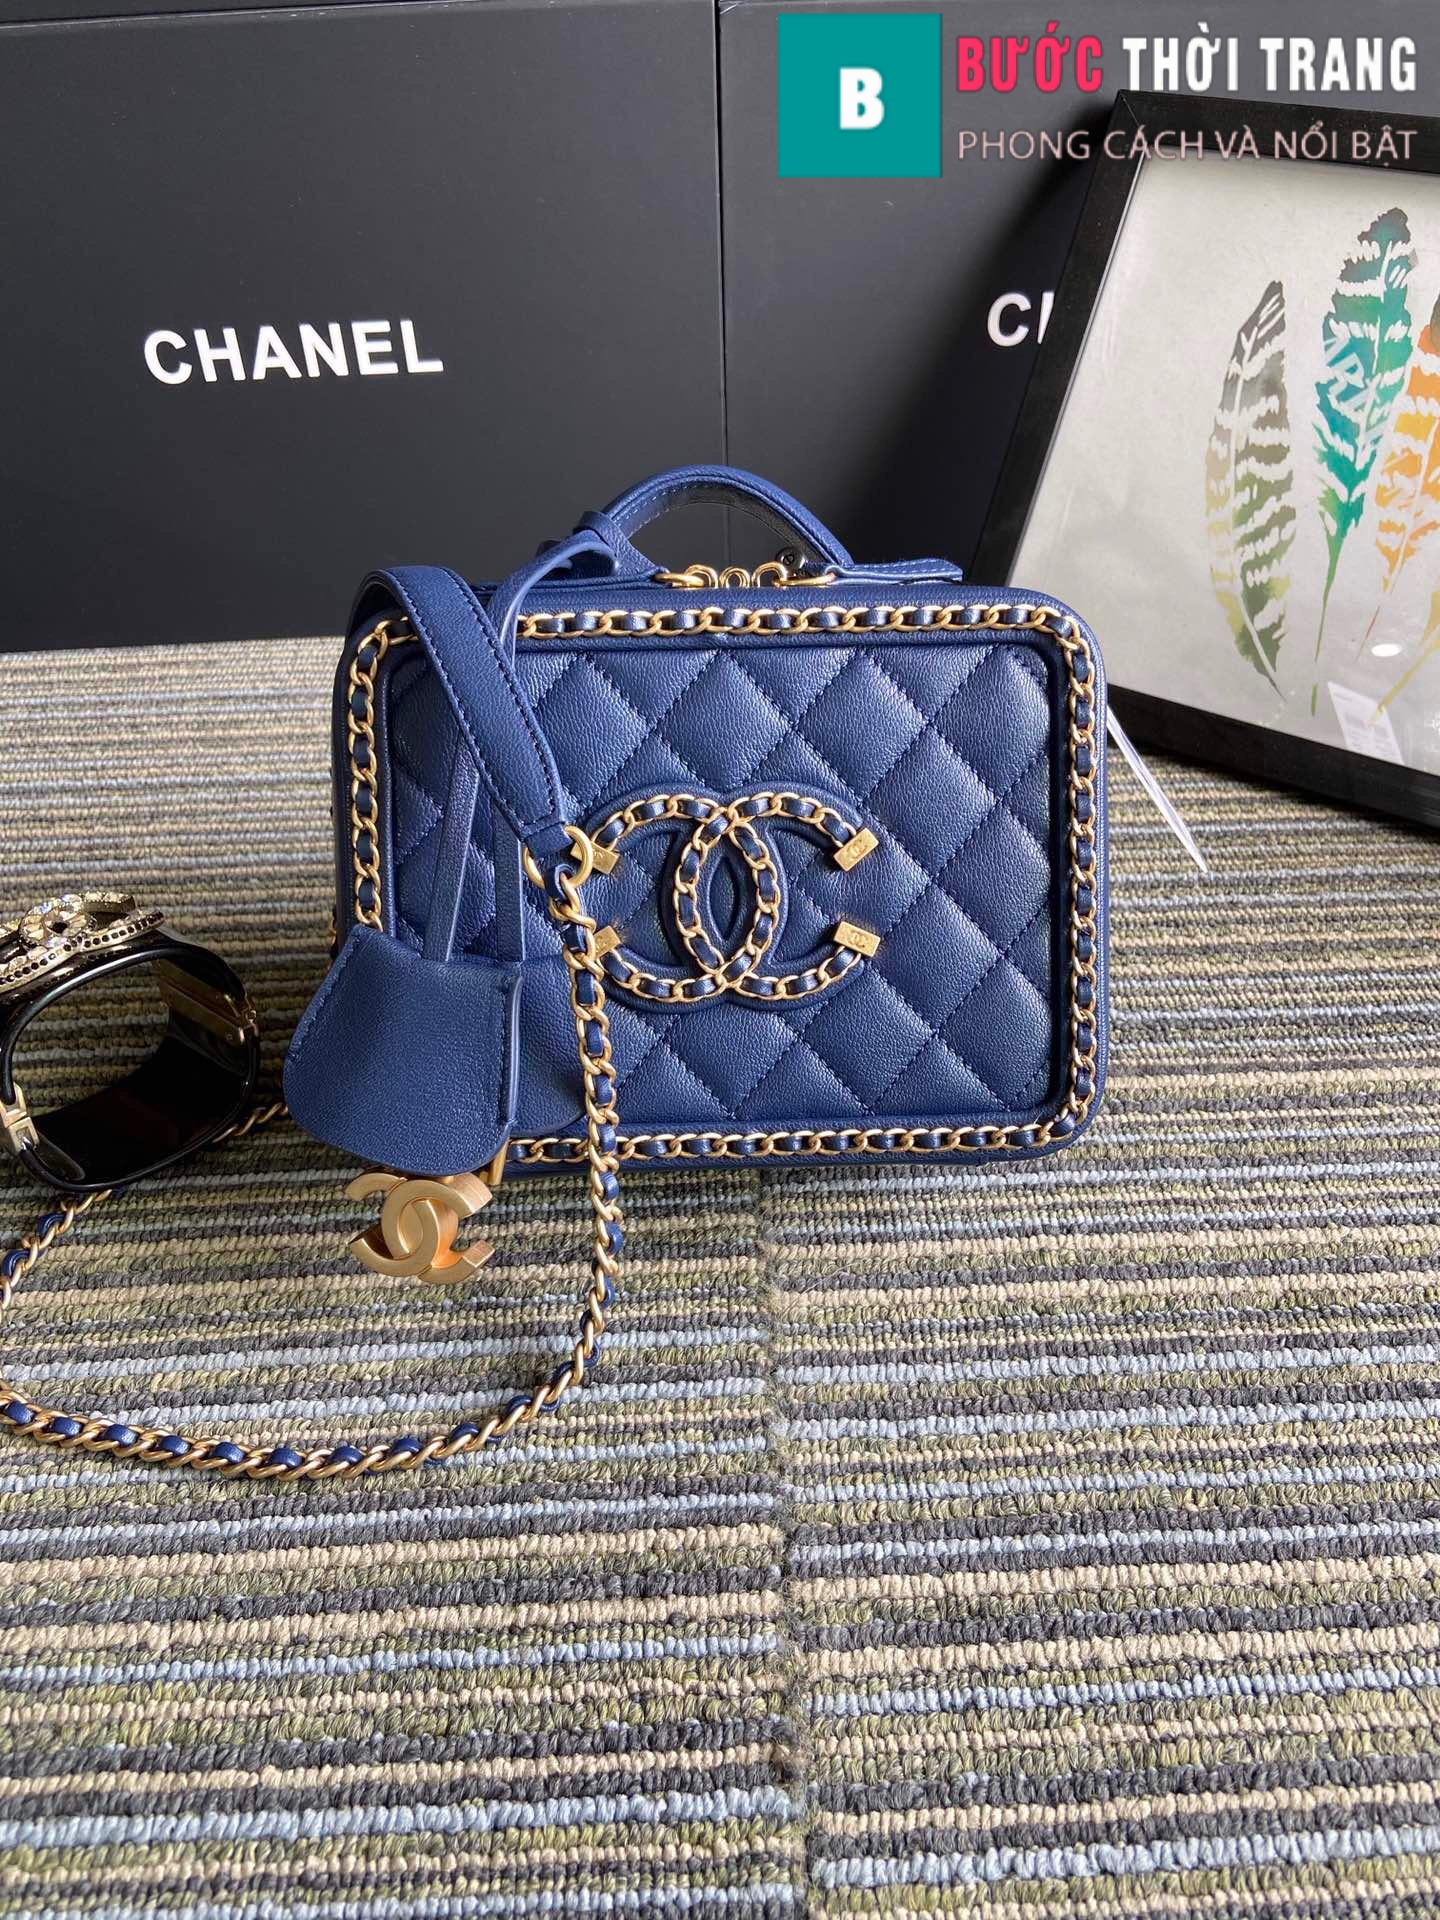 Túi xách Chanel Vanity case (10)